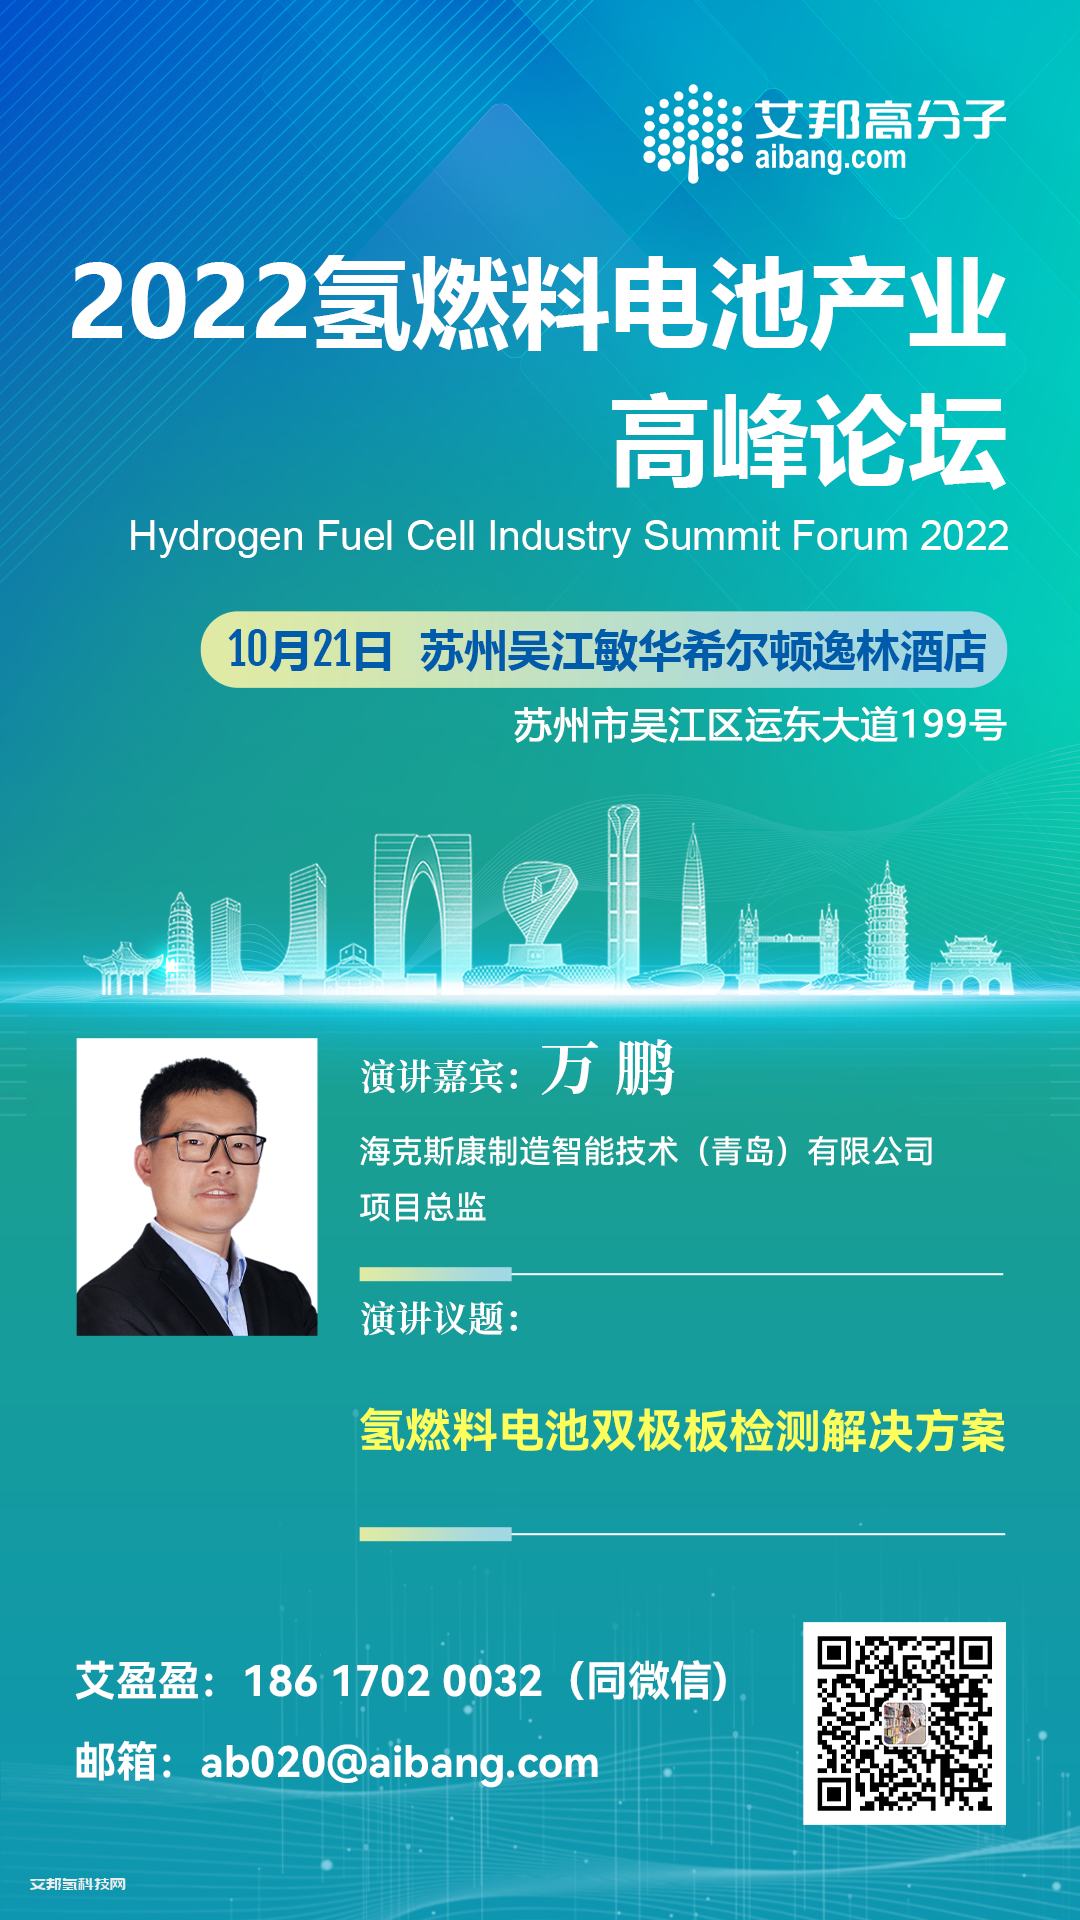 海克斯康将出席氢燃料电池产业链高峰论坛并做主题演讲